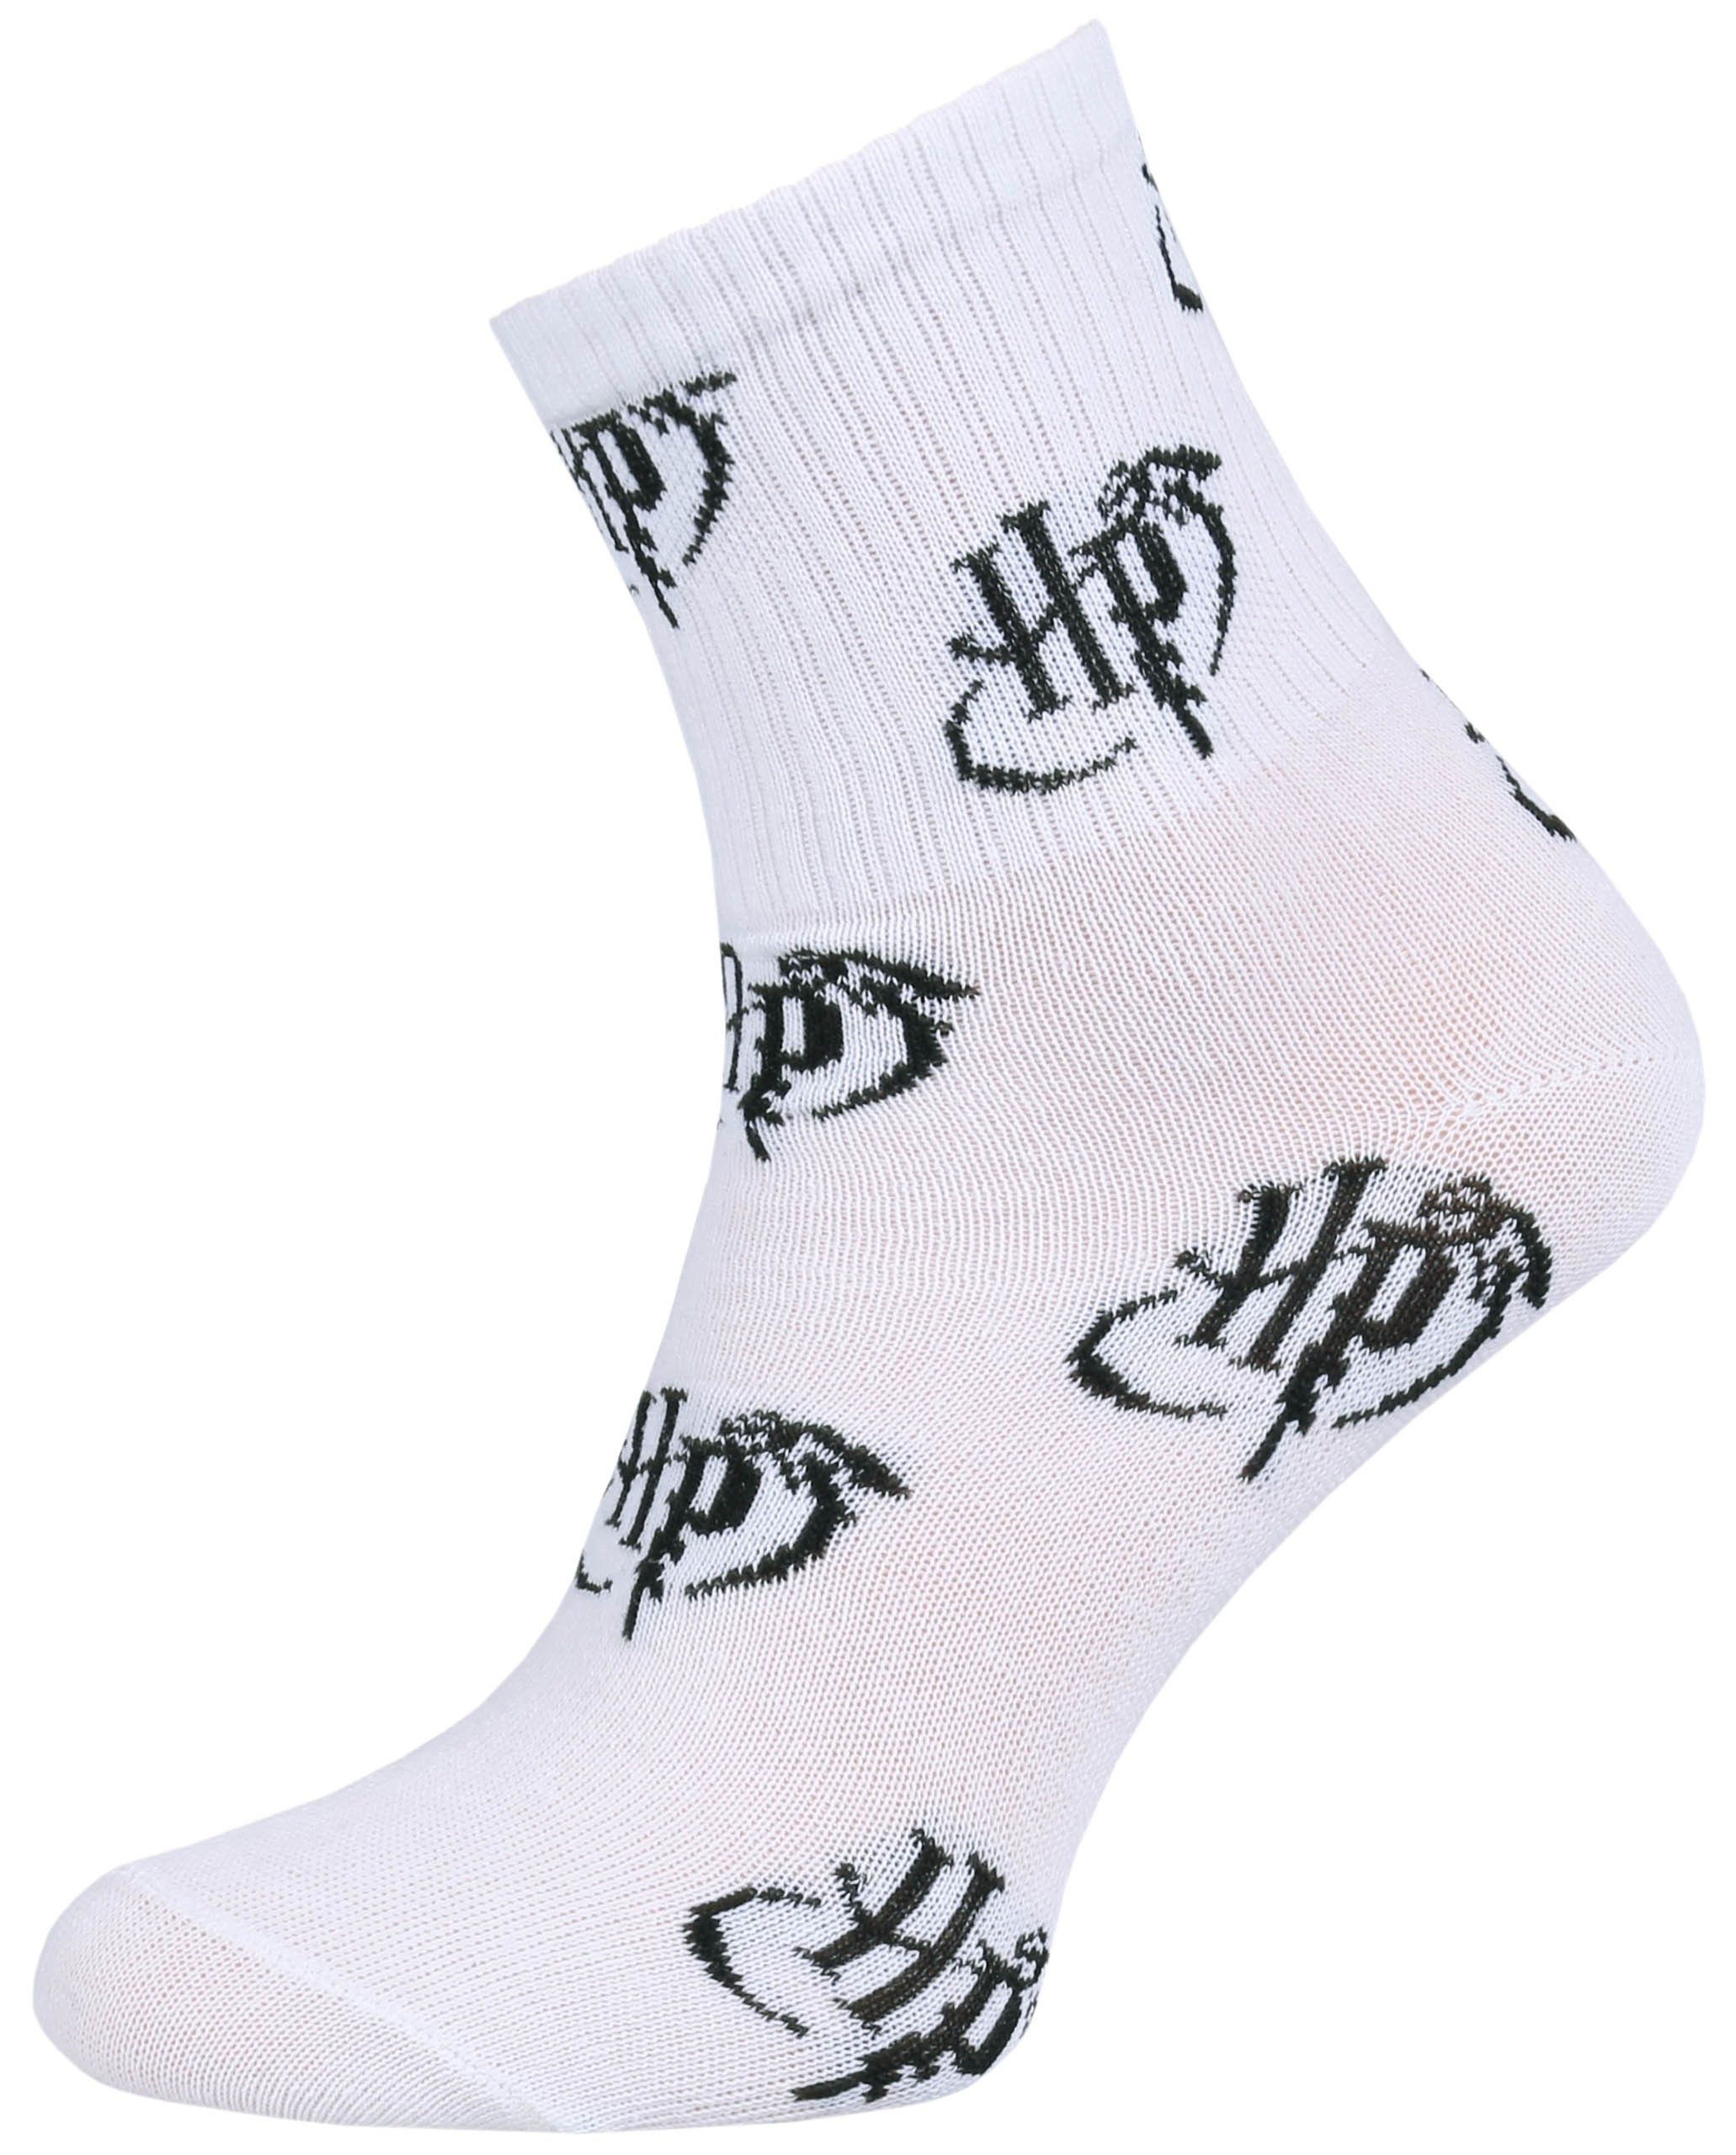 Sarcia.eu Haussocken Weiße Socken mit sich wiederholenden Initialen Harry Potter